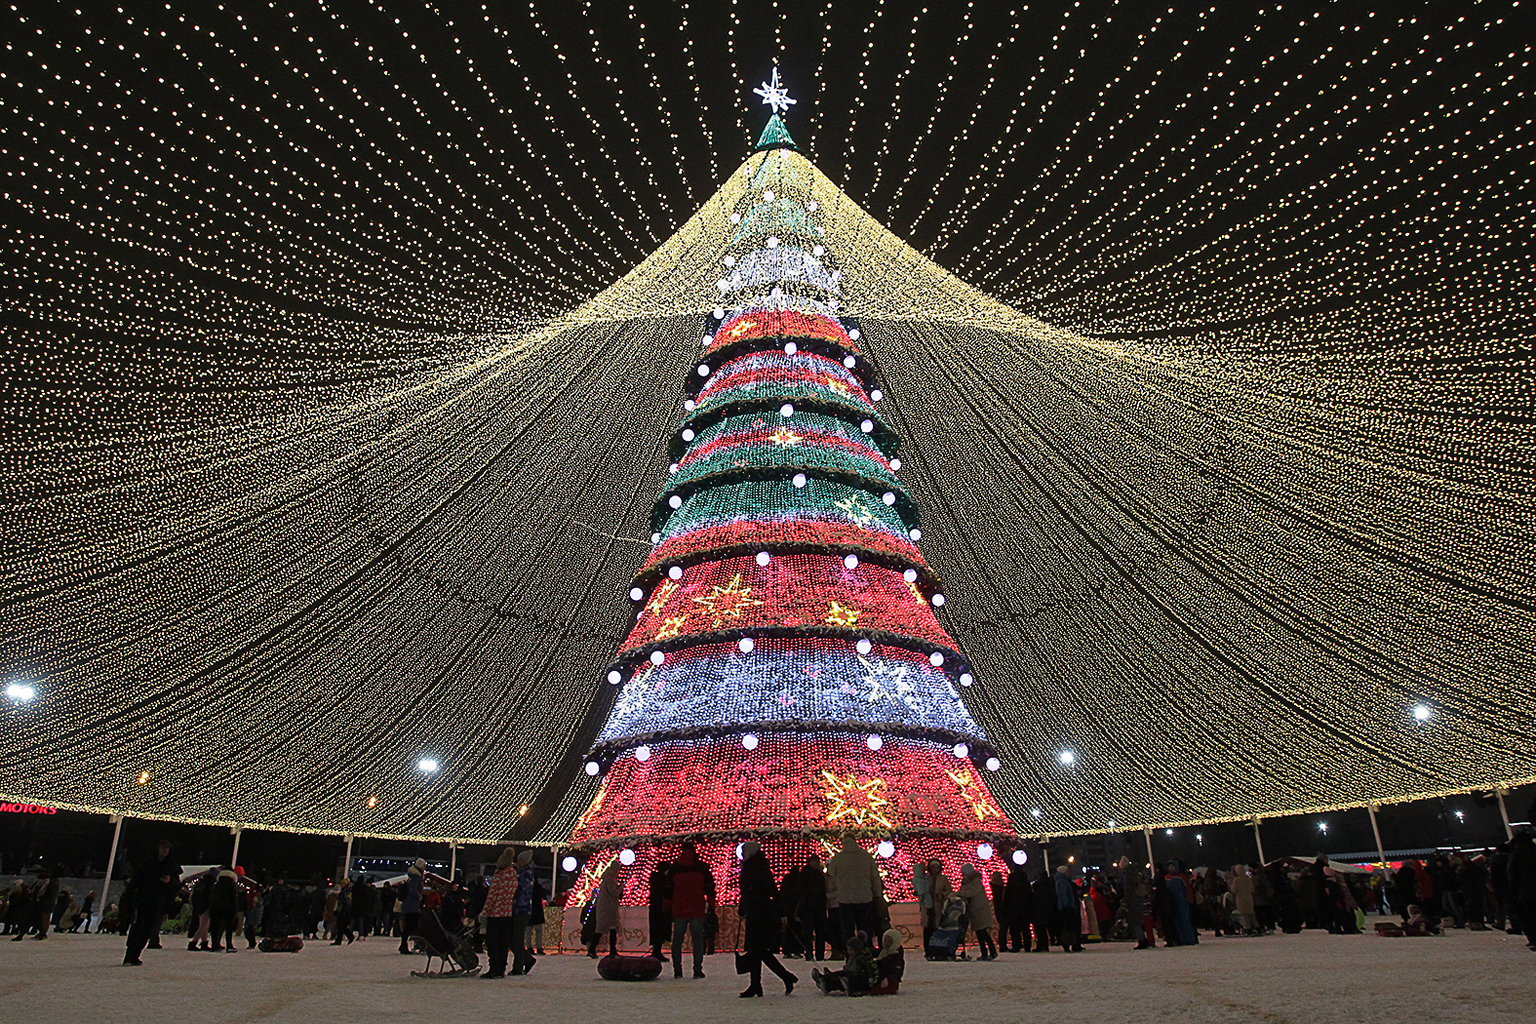 Az ortodox karácsony tiszteletére feldíszített karácsonyfa Kazany központjában 2021. január 5-én #moszkvater